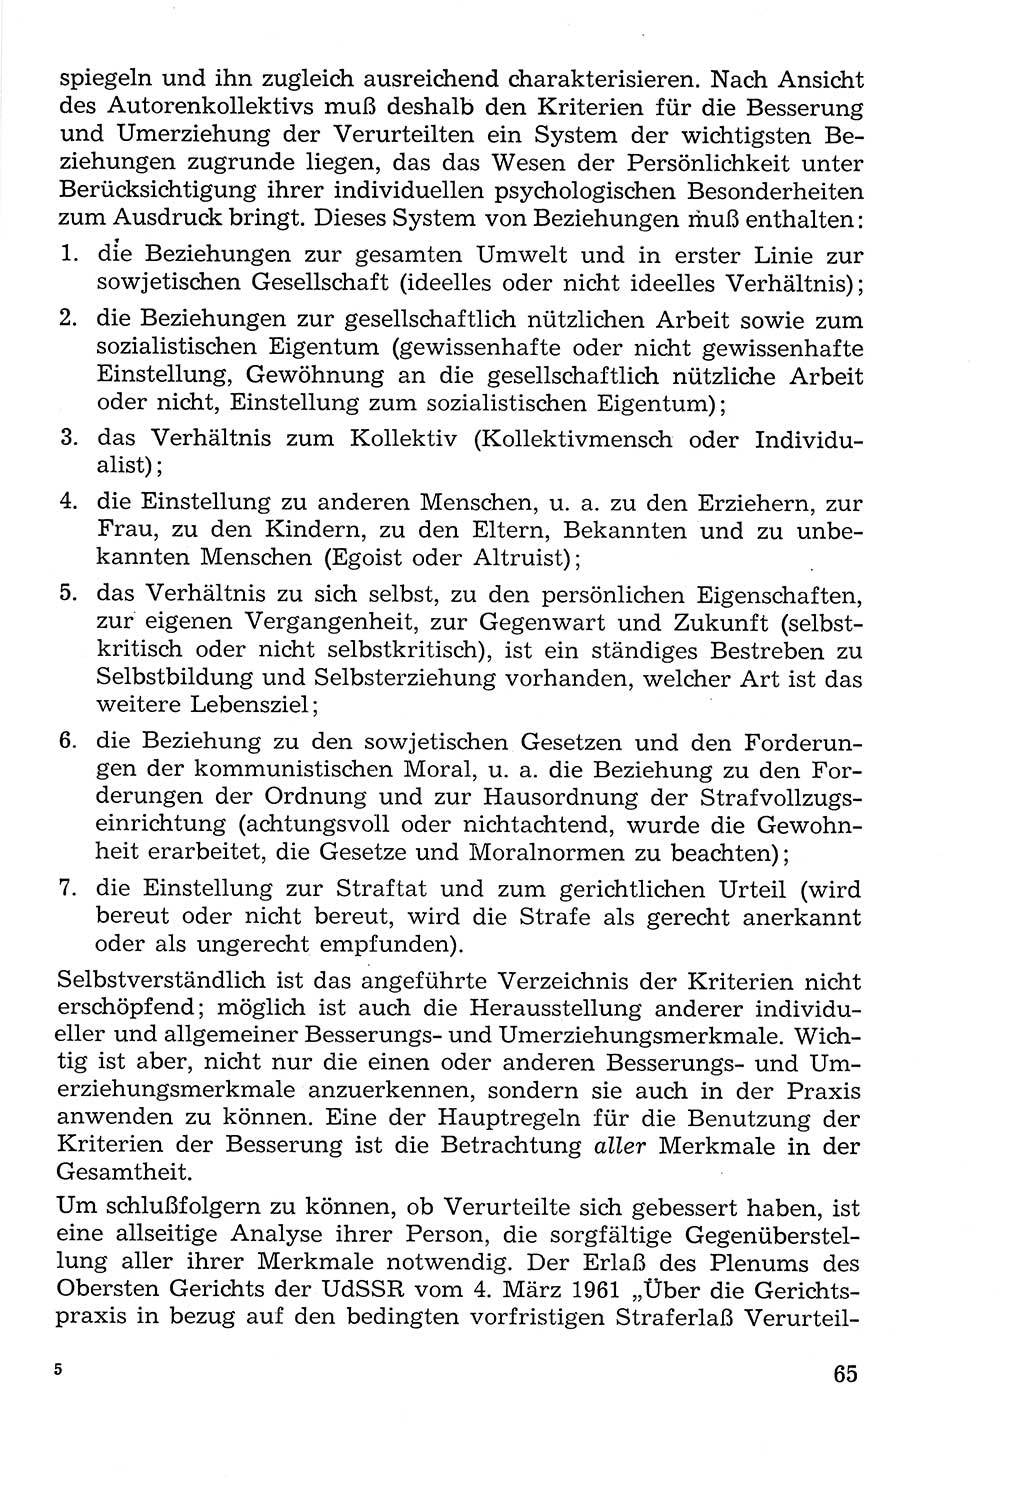 Lehrbuch der Strafvollzugspädagogik [Deutsche Demokratische Republik (DDR)] 1969, Seite 65 (Lb. SV-Pd. DDR 1969, S. 65)